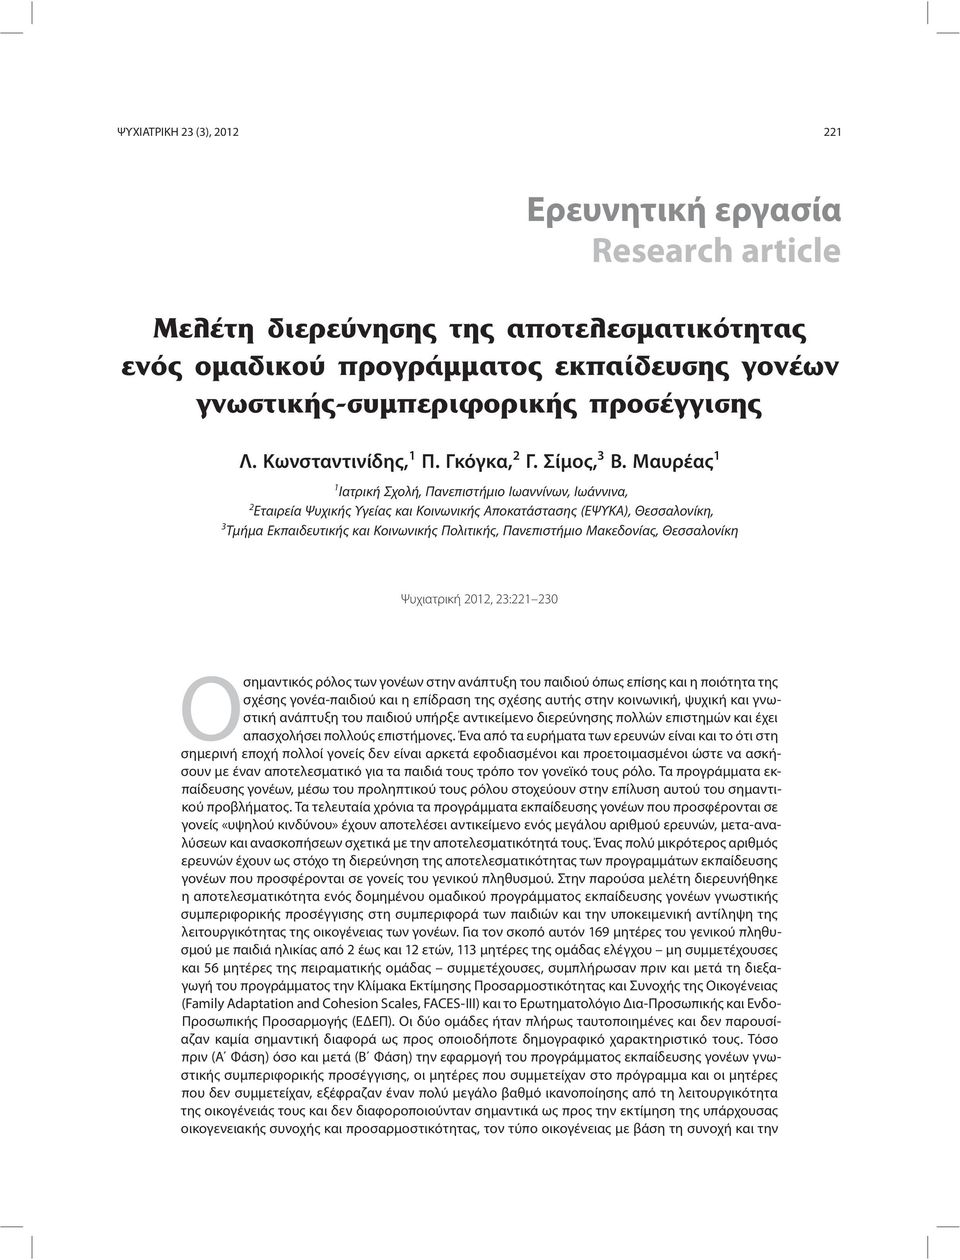 Μακεδονίας, Θεσσαλονίκη Ψυχιατρική 2012, 23:221 230 Οσημαντικός ρόλος των γονέων στην ανάπτυξη του παιδιού όπως επίσης και η ποιότητα της σχέσης γονέα-παιδιού και η επίδραση της σχέσης αυτής στην